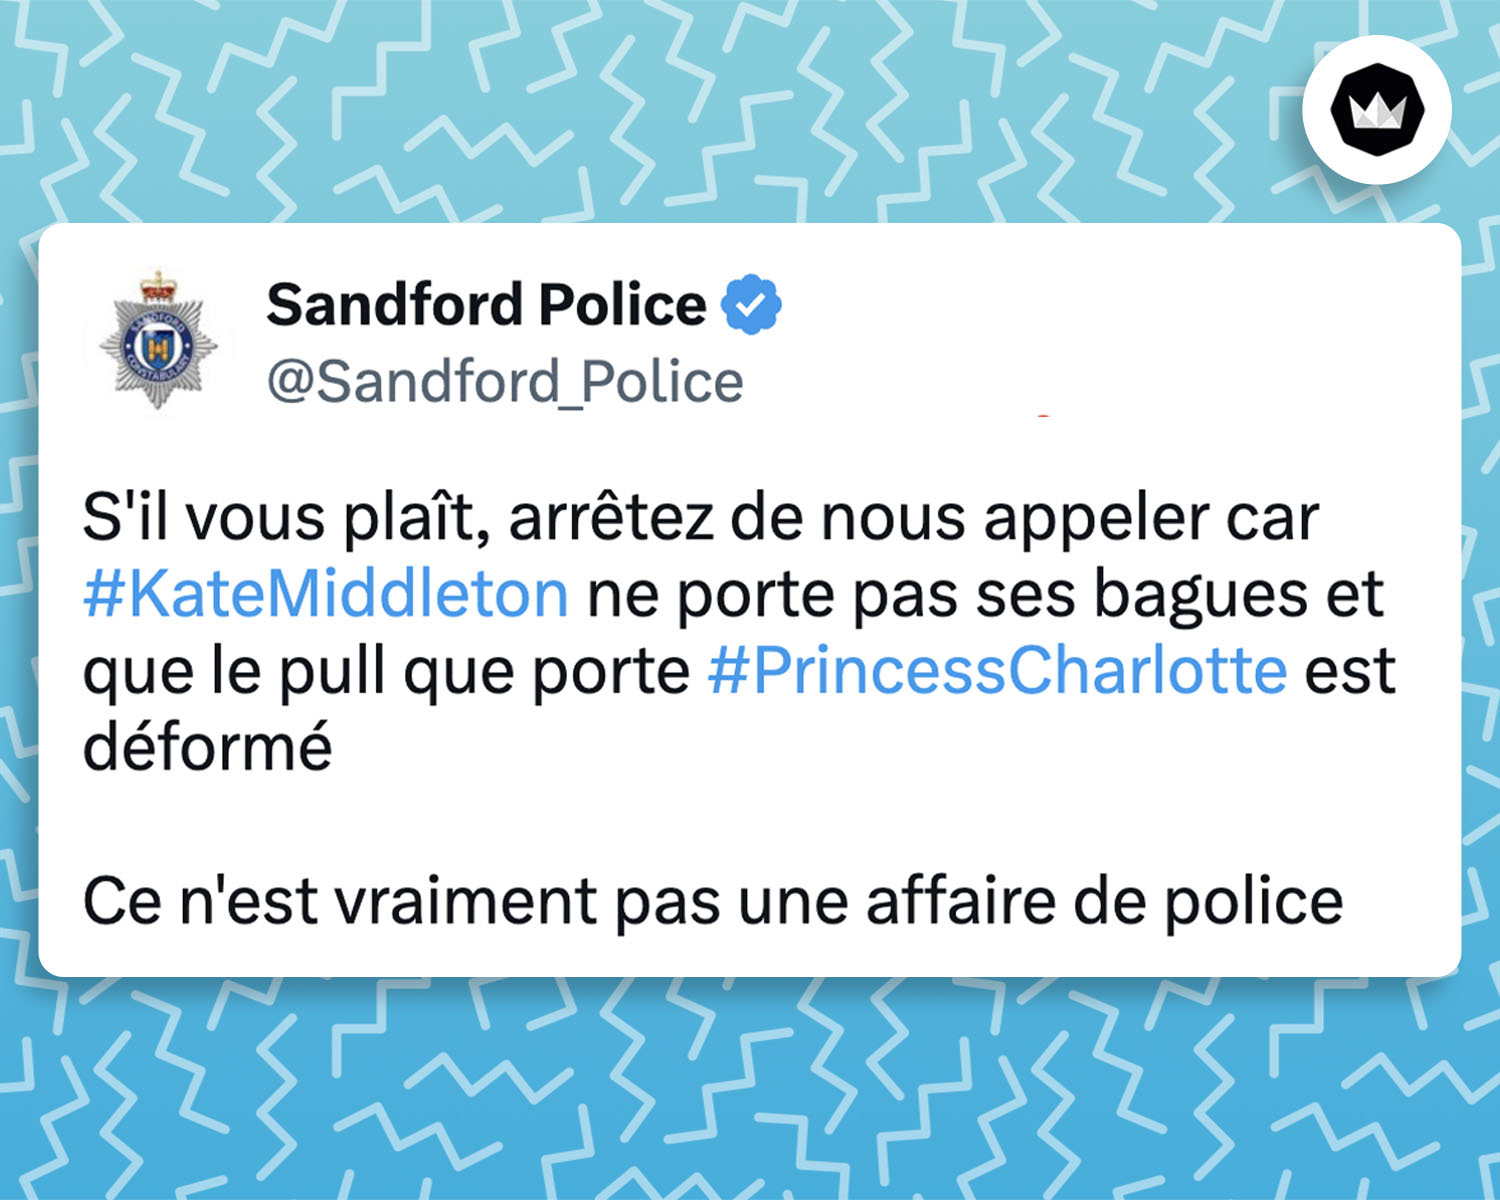 Tweet de Sandford_Police : 
"S'il vous plaît, arrêtez de nous appeler car #KateMiddleton ne porte pas ses bagues et que le pull que porte #PrincessCharlotte est déformé sur la photo.

Ce n'est vraiment pas une affaire de police"